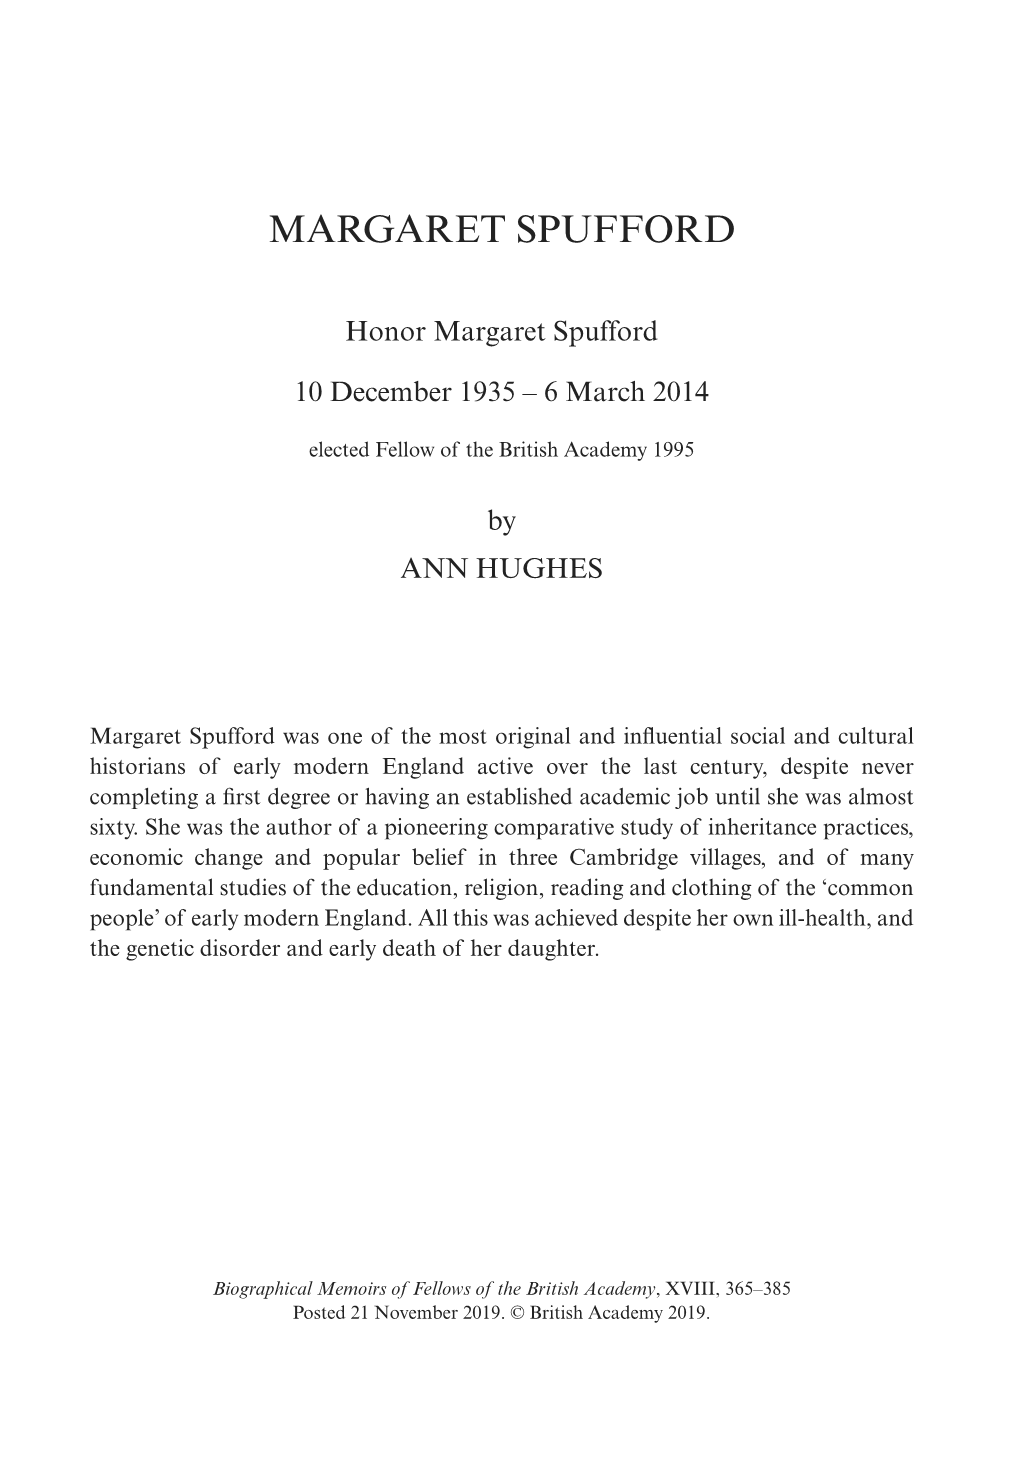 Margaret Spufford